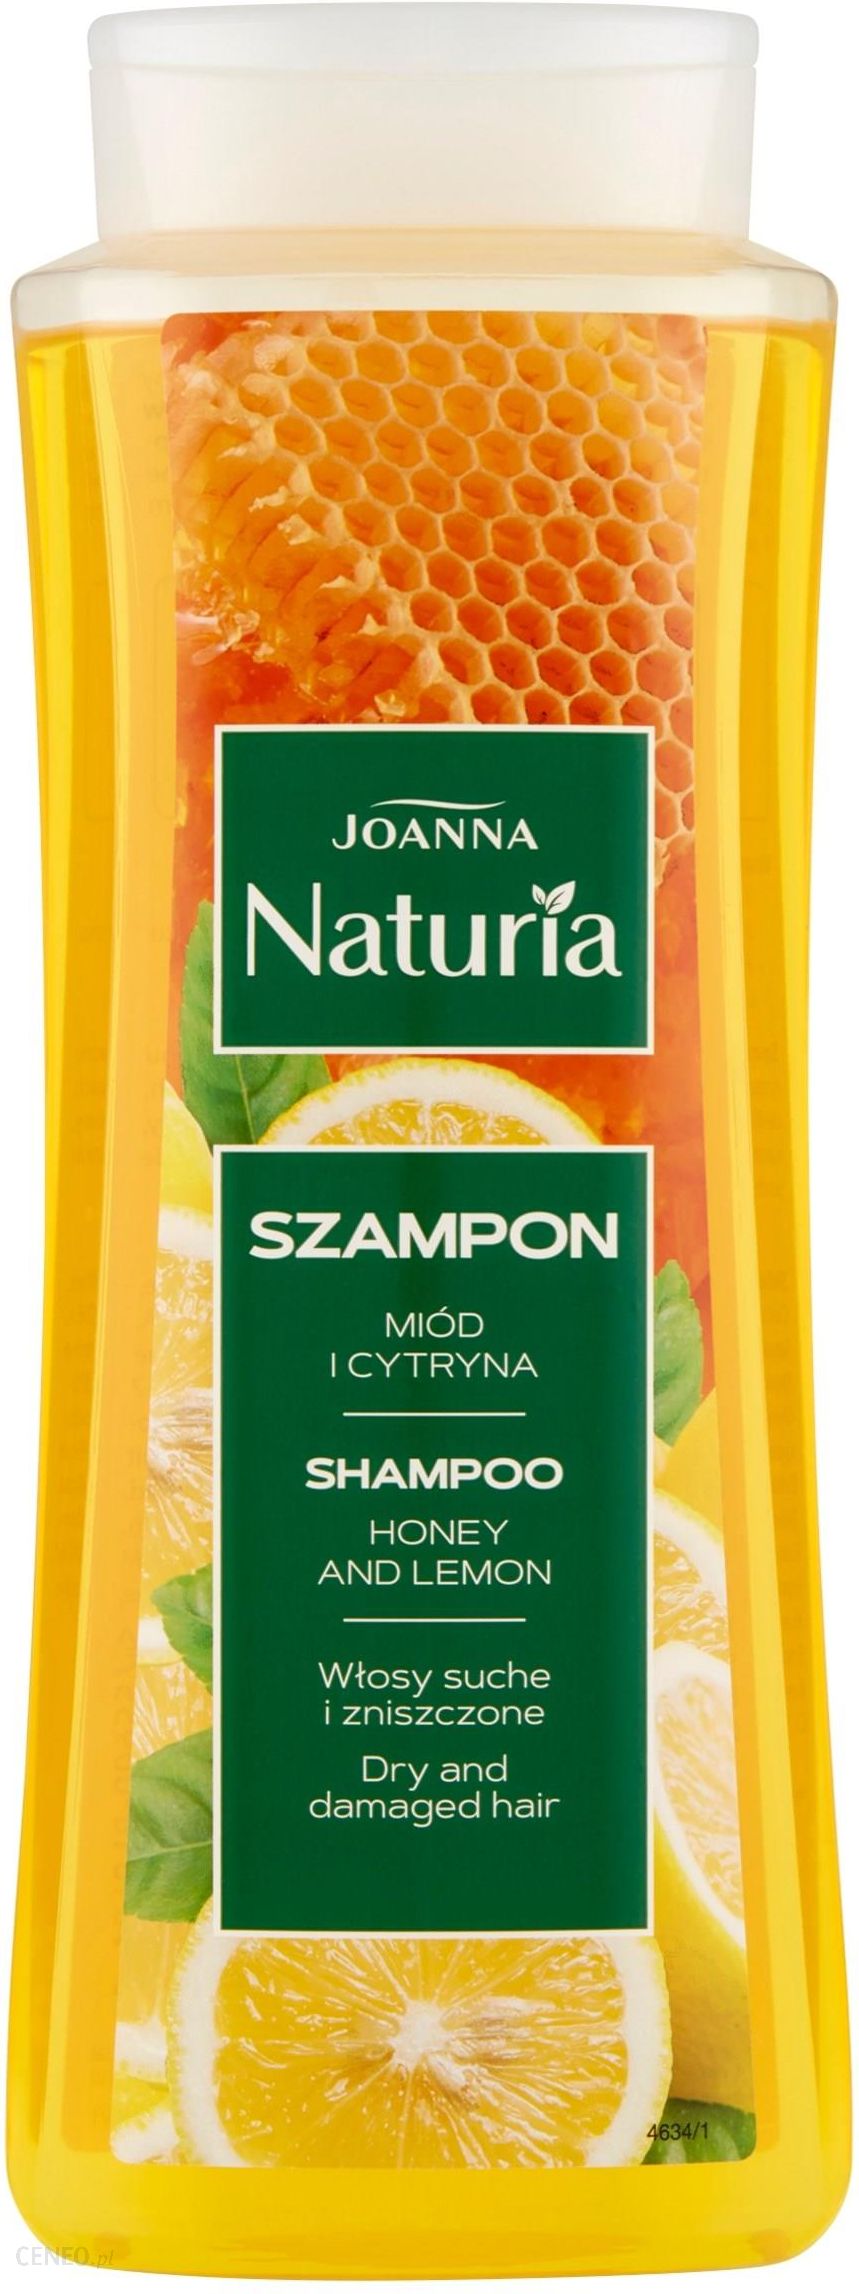 szampon z cytryna